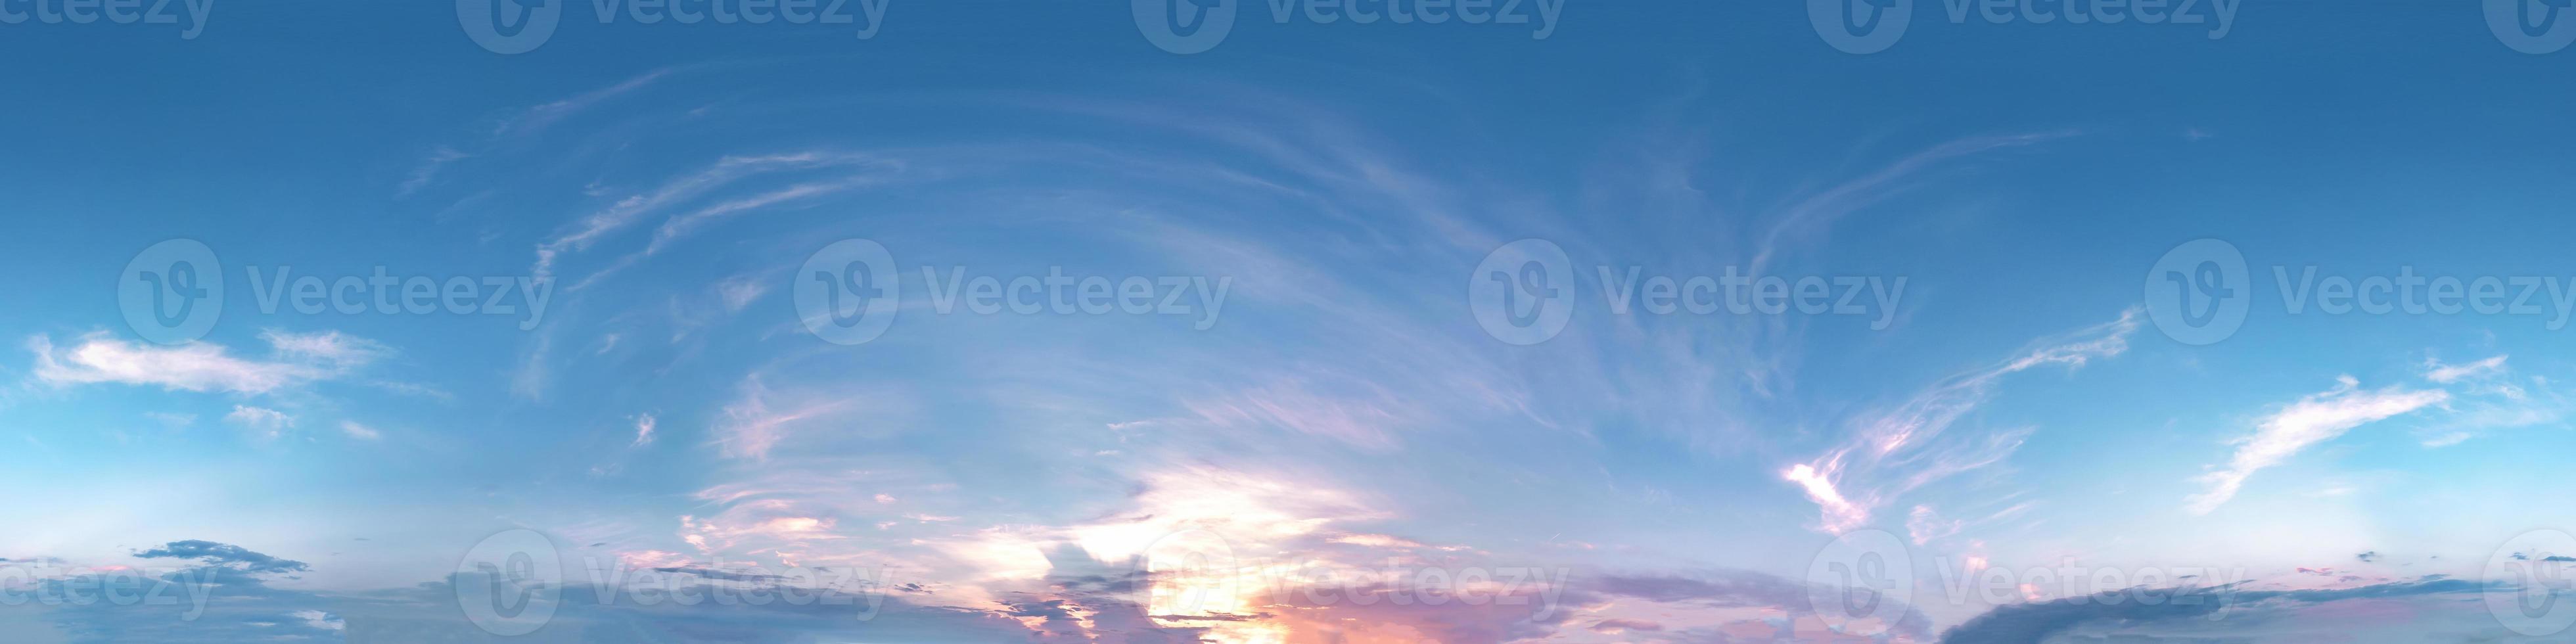 cielo azul nublado transparente hdri panorama 360 grados ángulo de visión con cenit y hermosas nubes para usar en gráficos 3d como cúpula del cielo o editar toma de drones foto